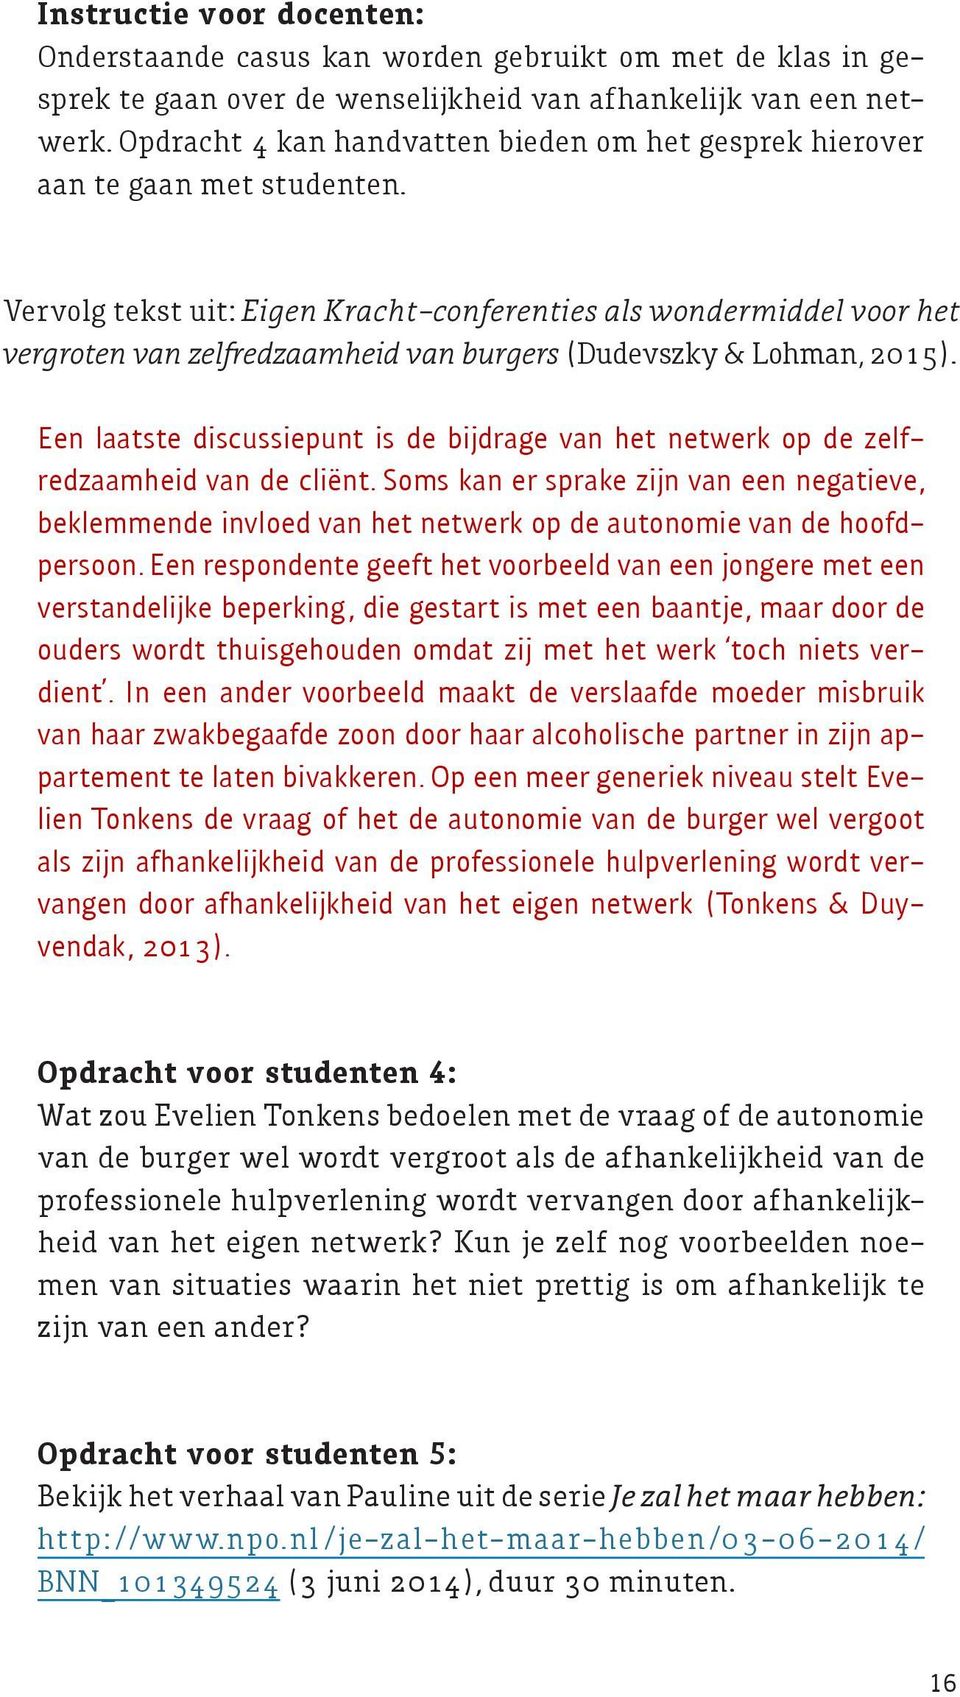 Vervolg tekst uit: Eigen Kracht-conferenties als wondermiddel voor het vergroten van zelfredzaamheid van burgers (Dudevszky & Lohman, 2015).